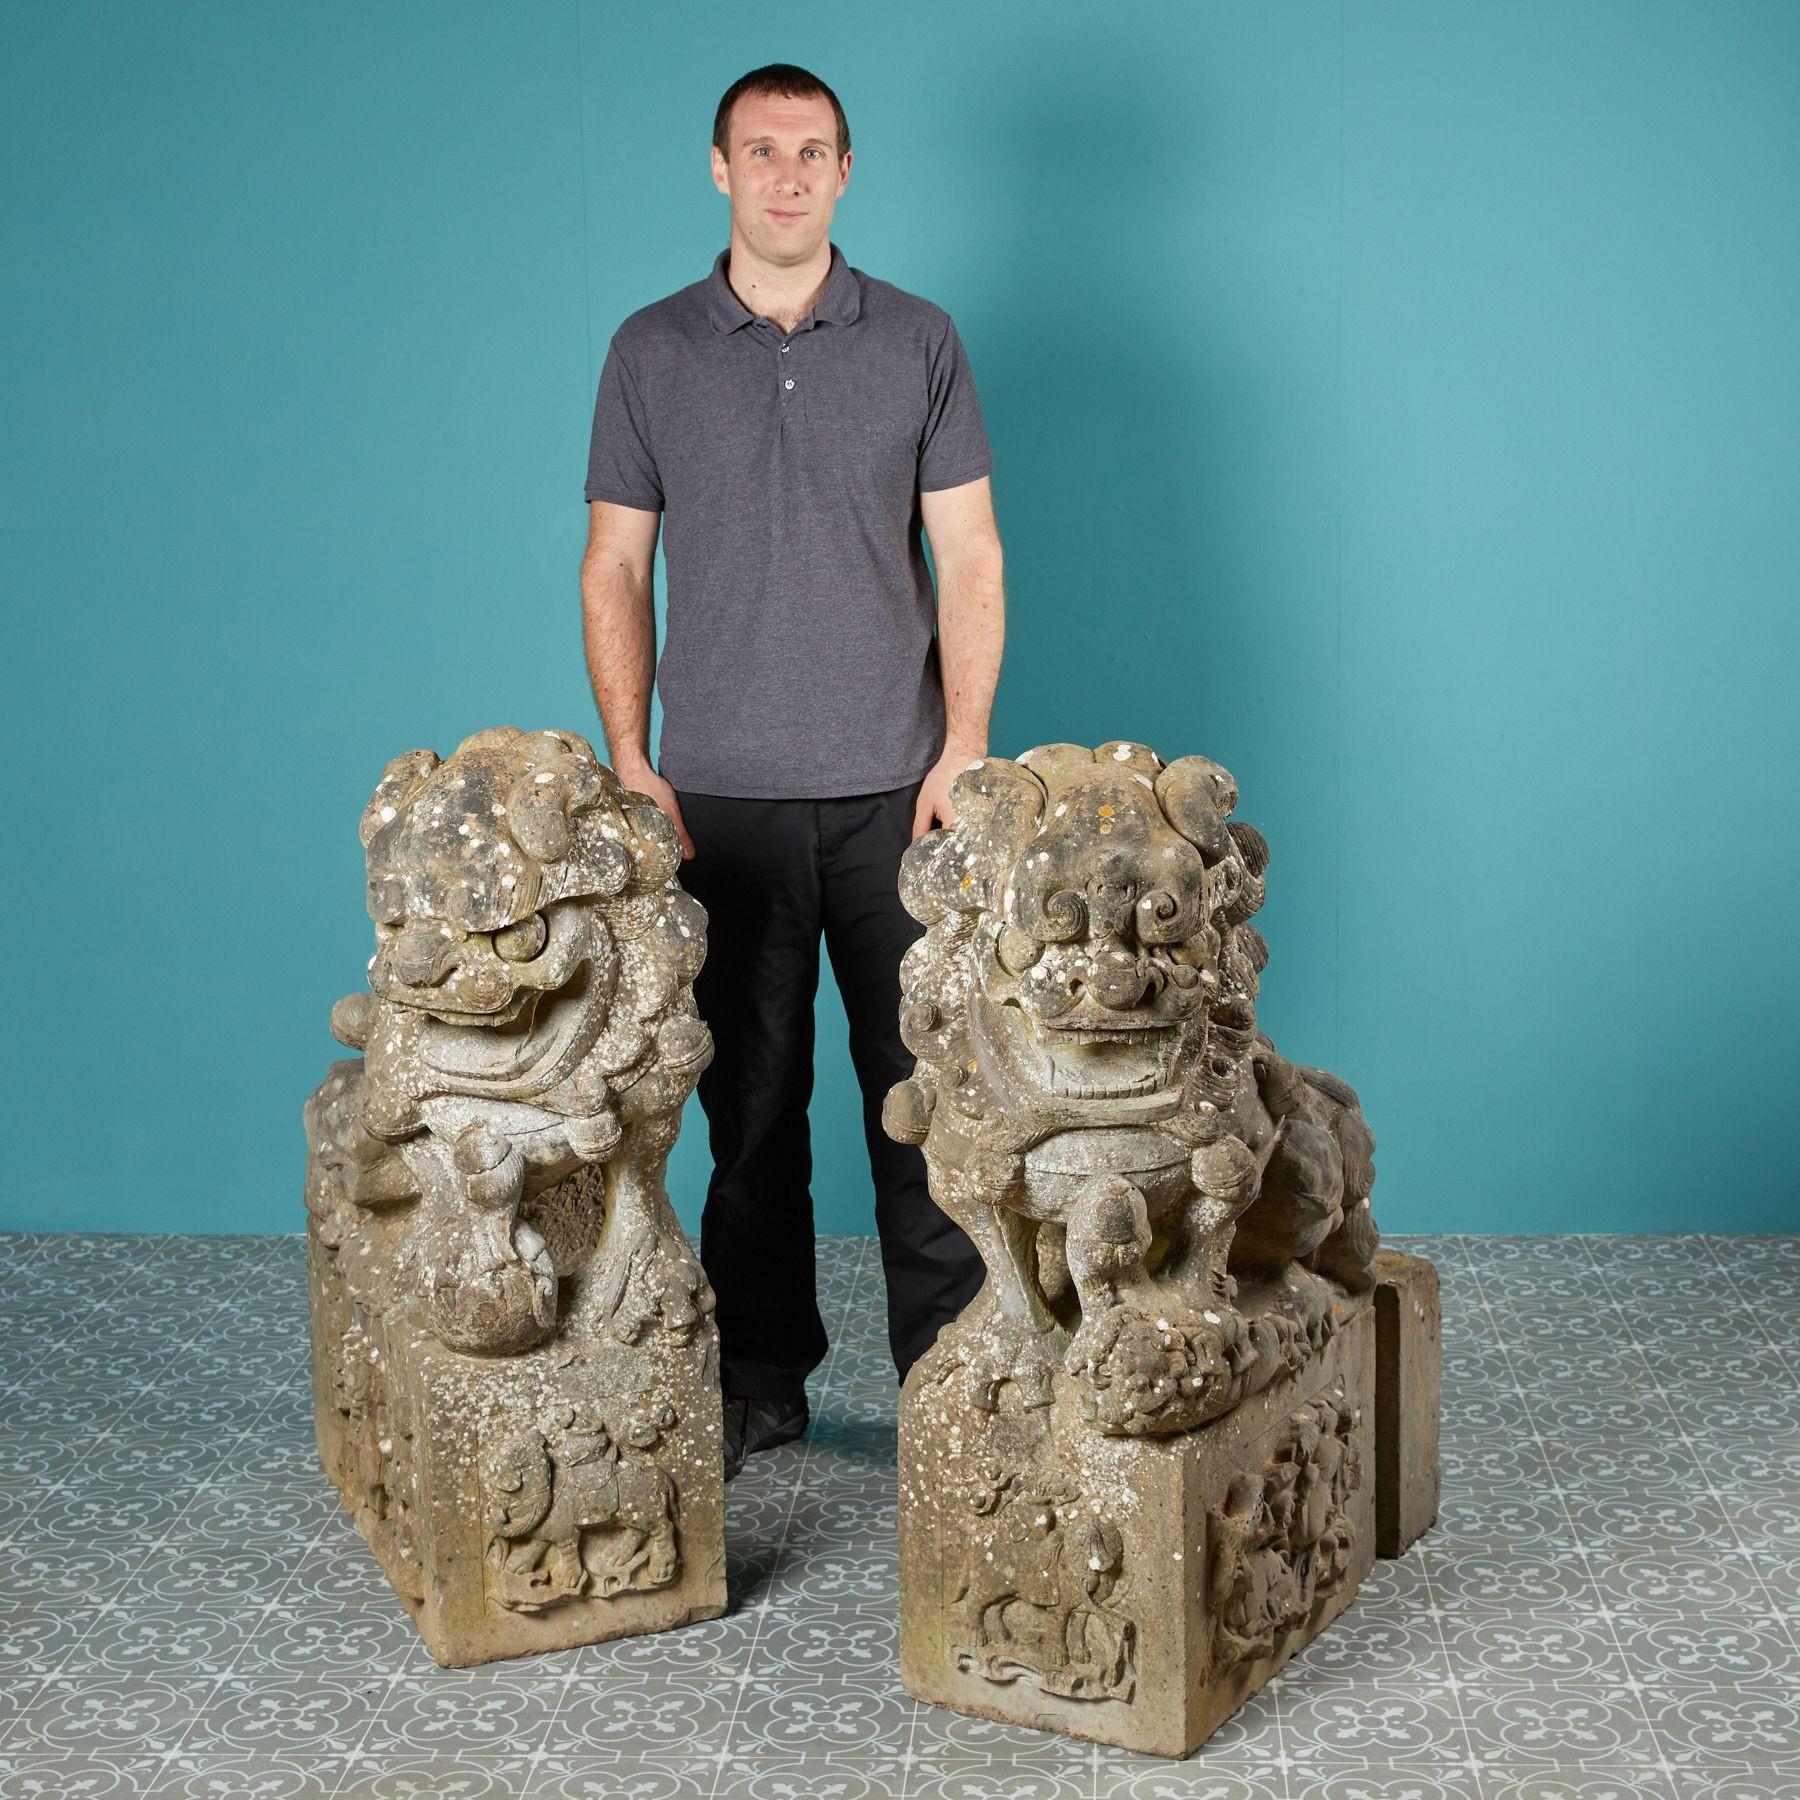 Dans la culture asiatique, le lion gardien ou chien foo, qui ressemble à un lion, est un symbole de protection et de gardiennage. Magnifiquement sculptée dans le grès, cette grande paire de statues de chiens foo flanquait autrefois une grande porte.